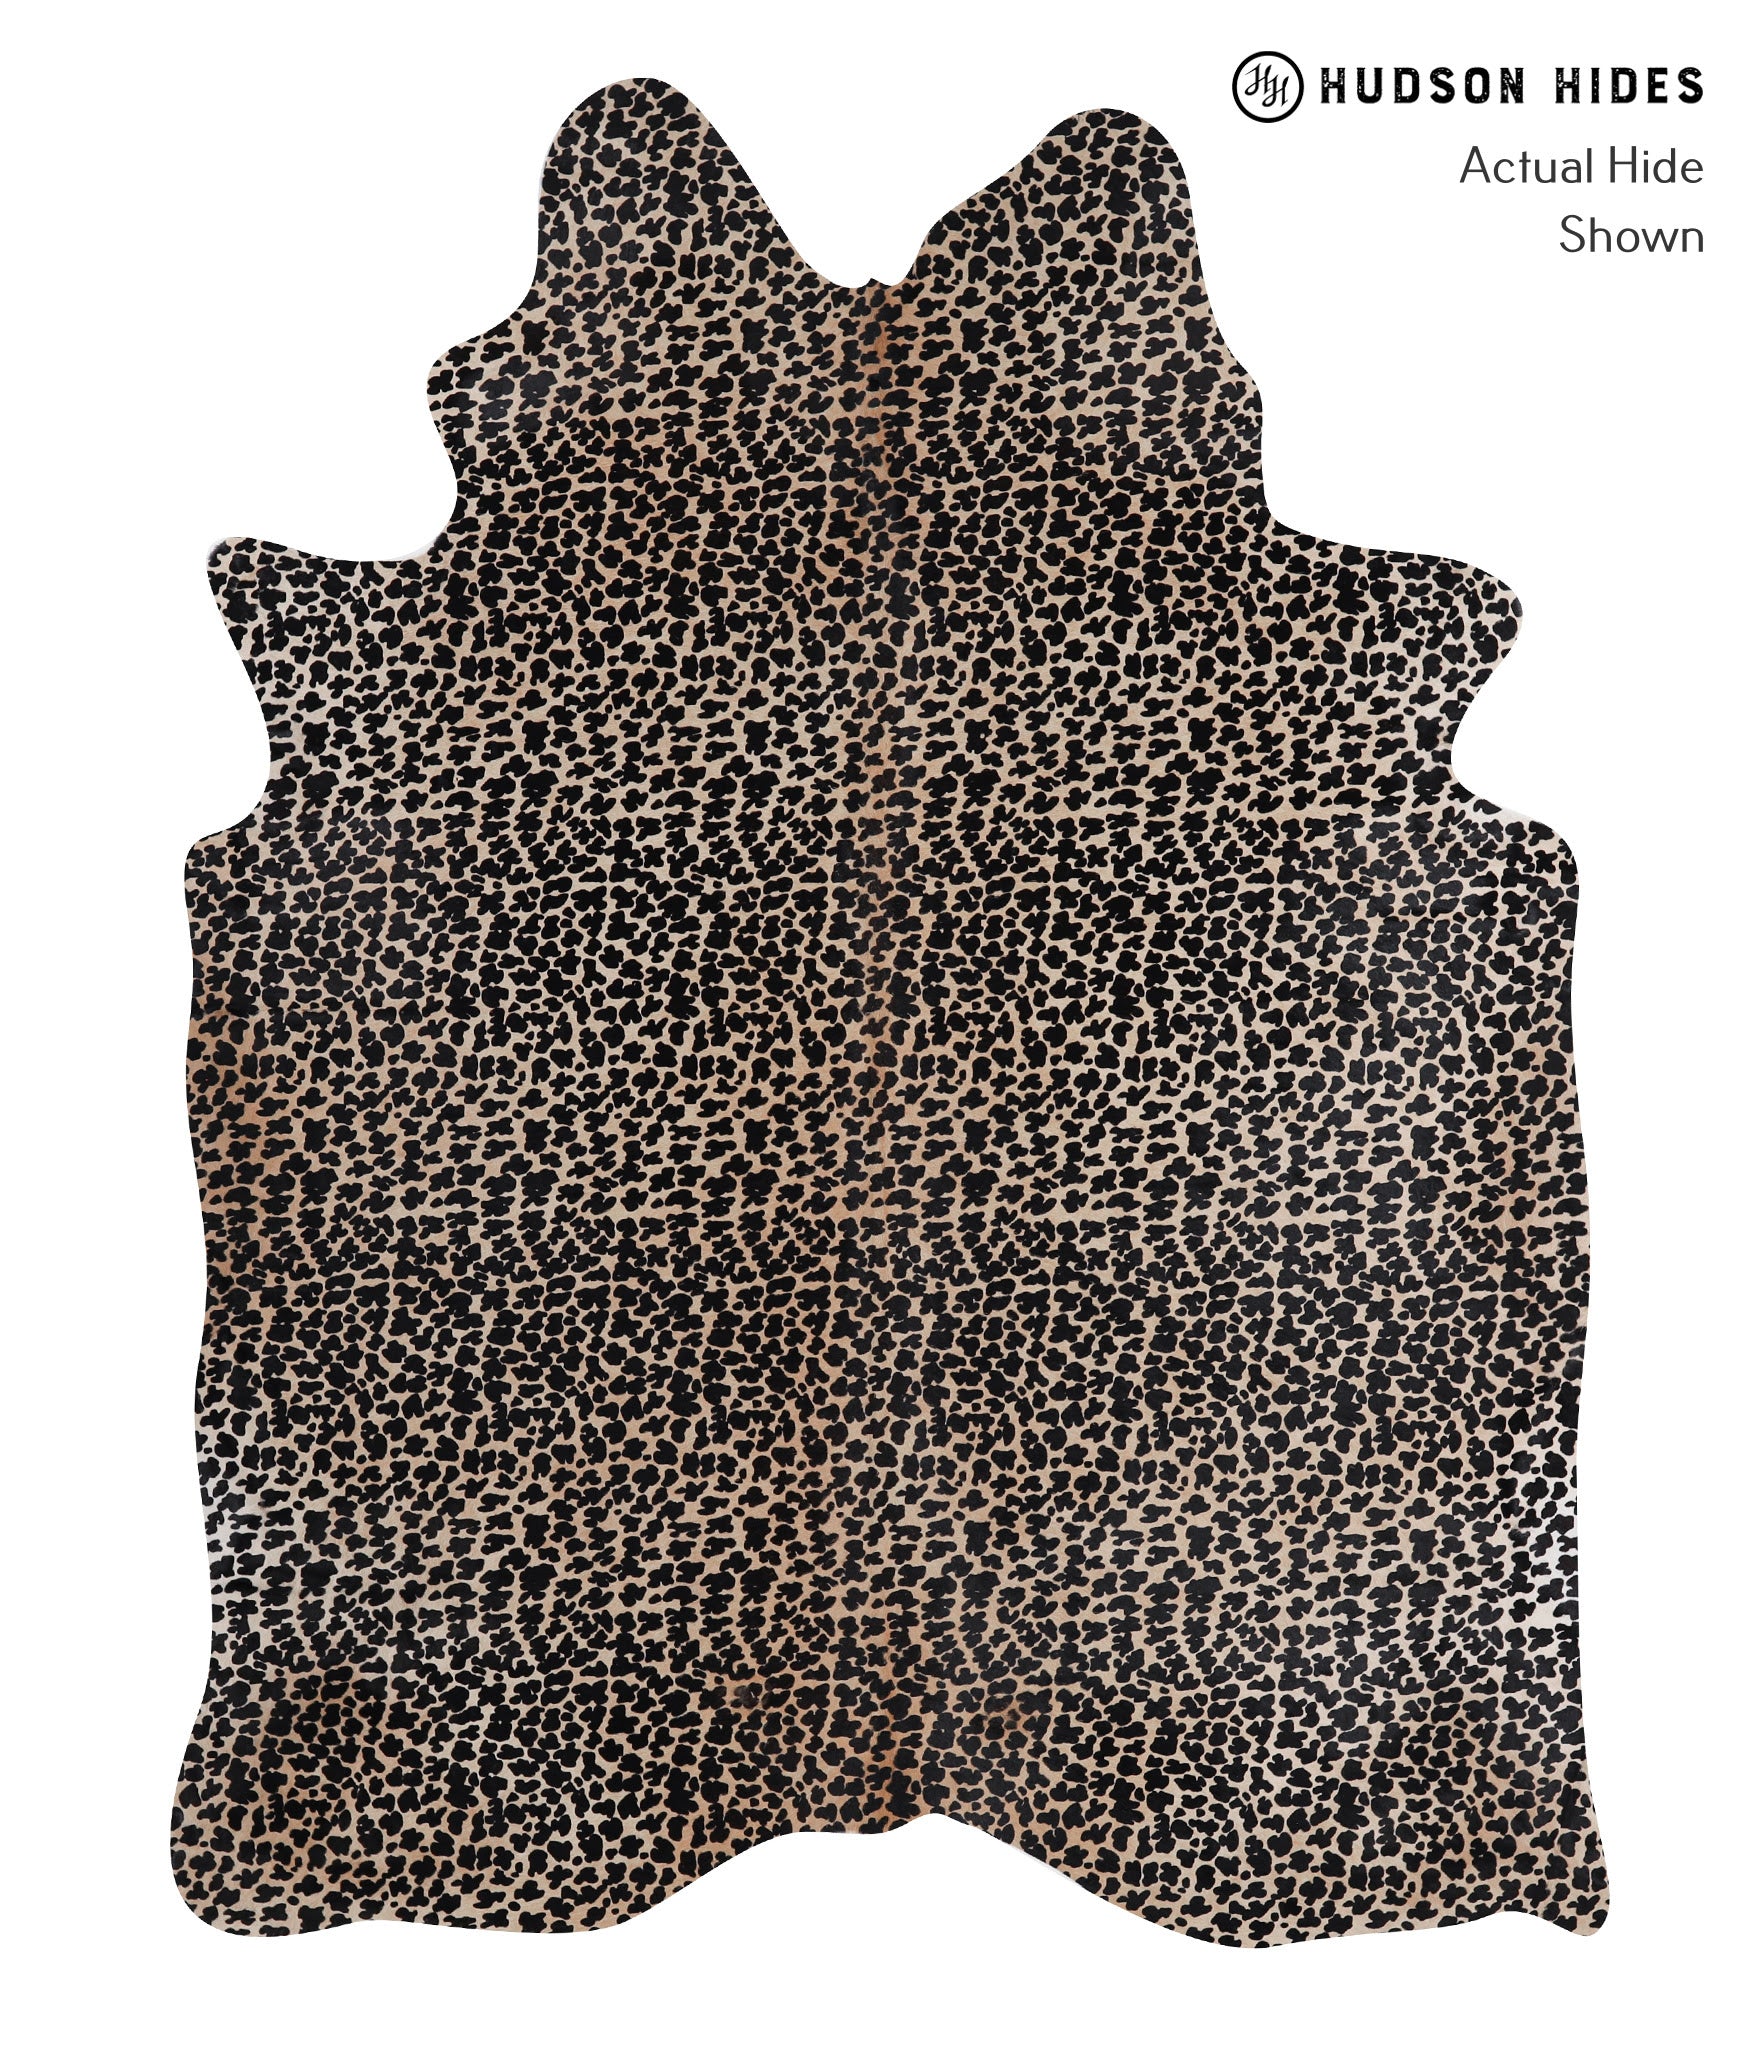 Animal Print Cowhide Rug #A12836